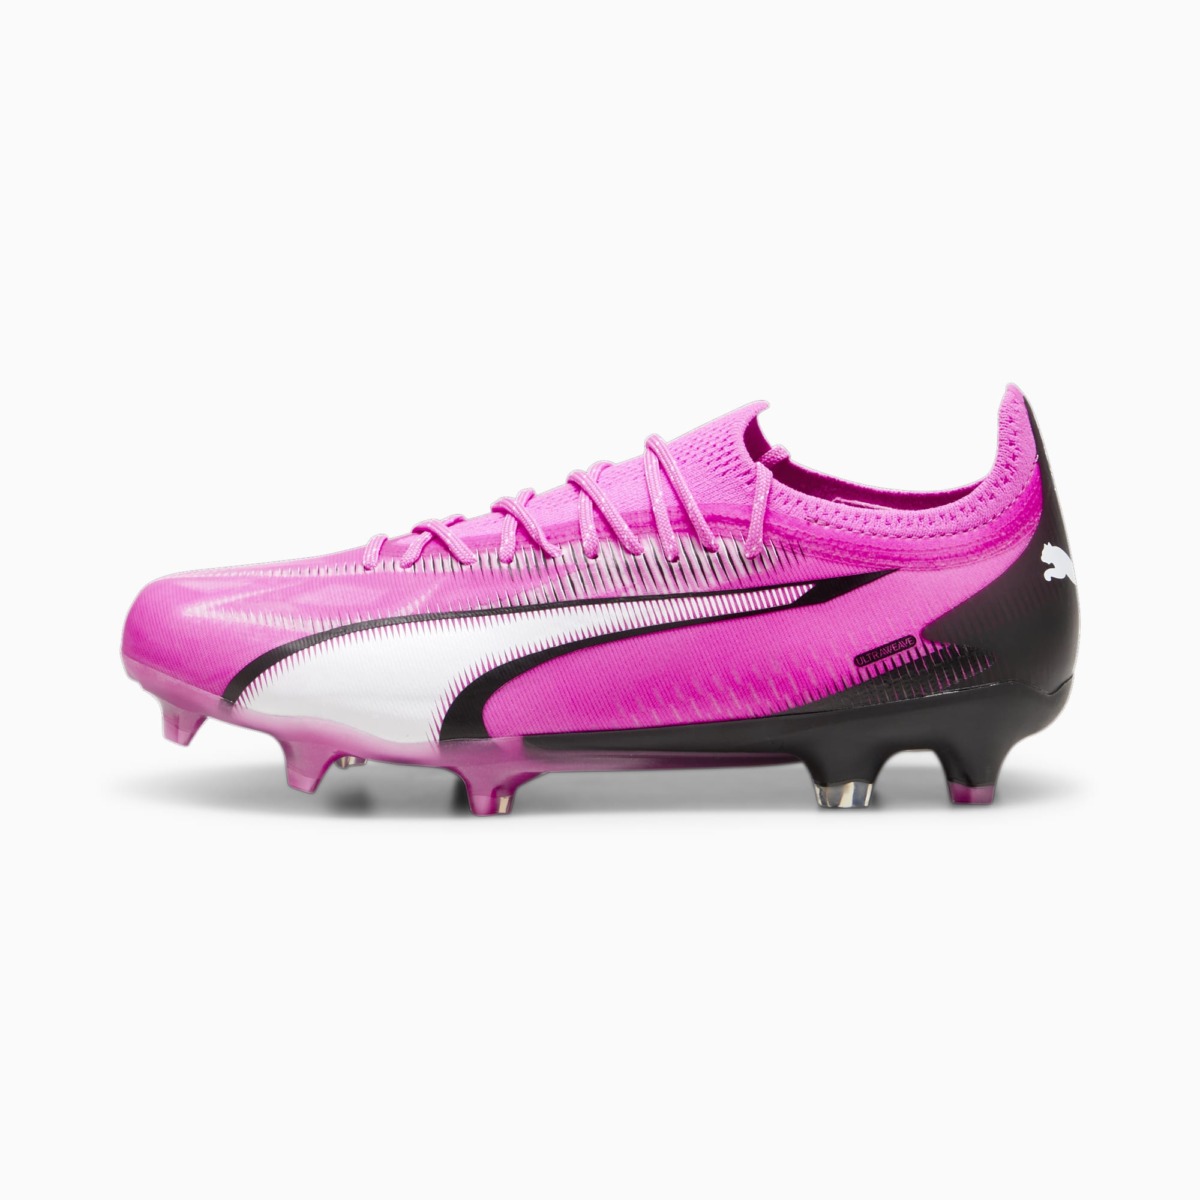 Woman Pink Soccer Shoes at Puma GOOFASH